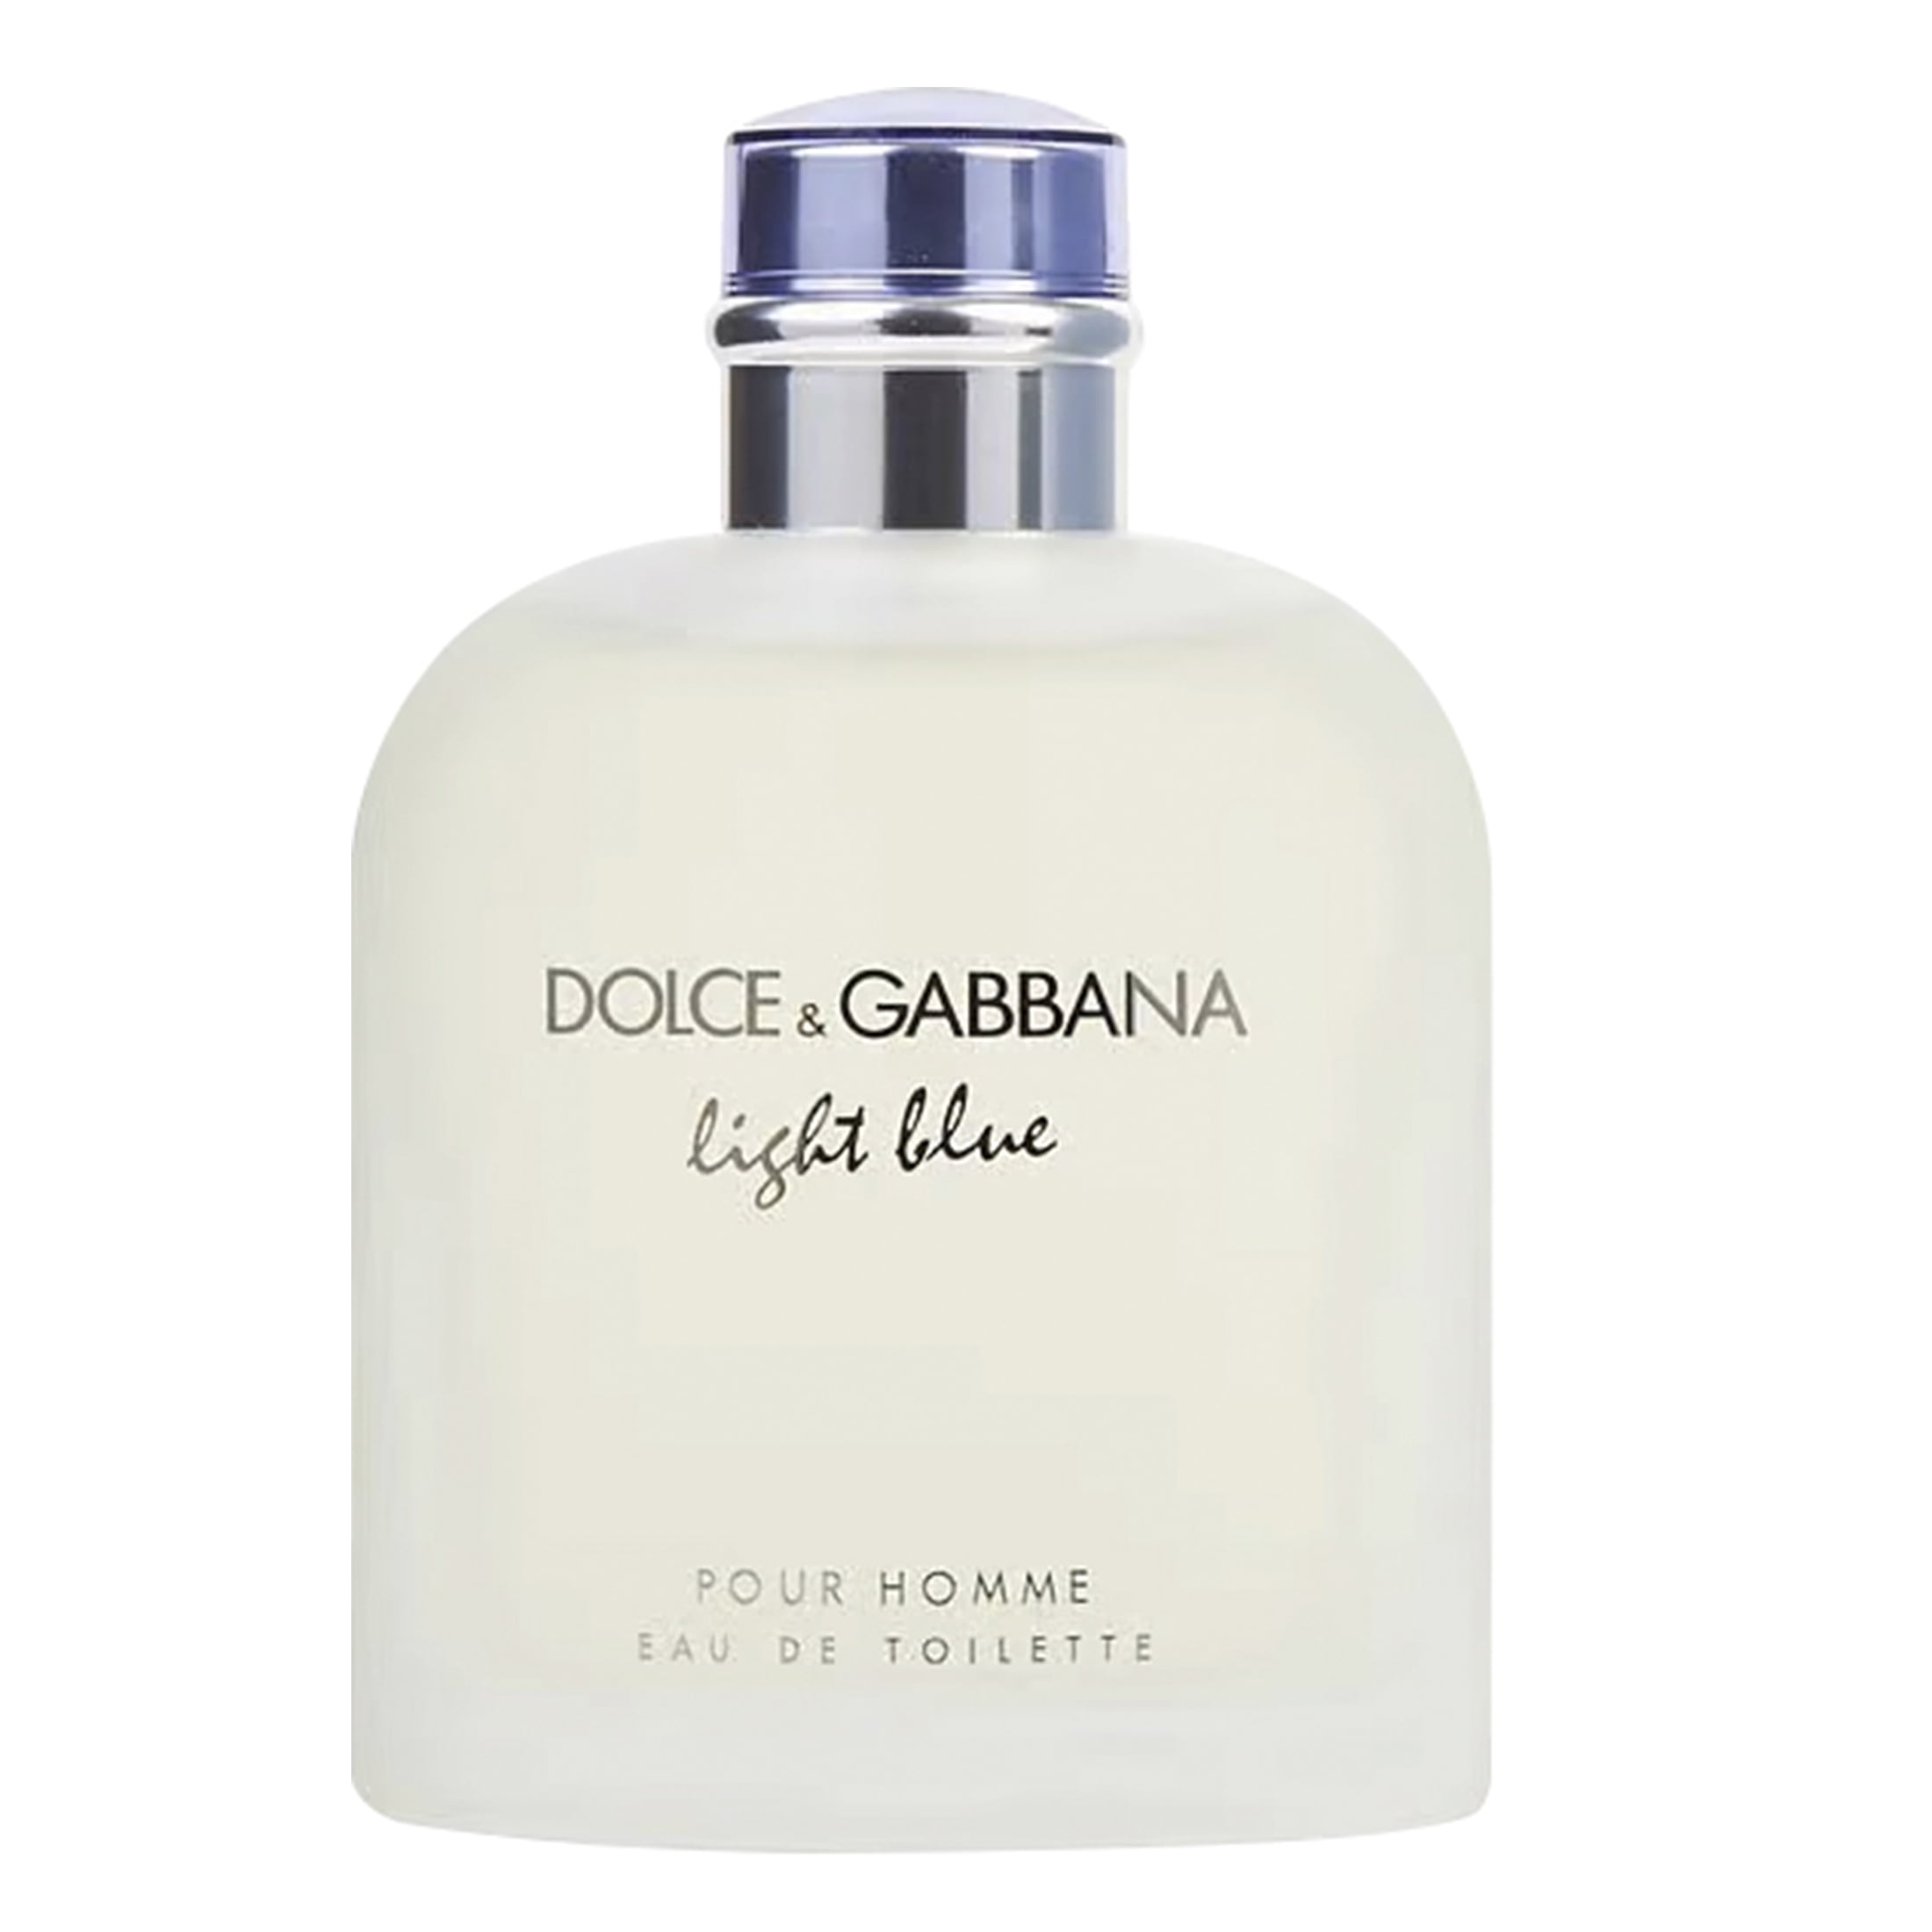 Dolce & Gabbana Light Blue Eau de Toilette, Cologne for Men, 6.7 Oz ...